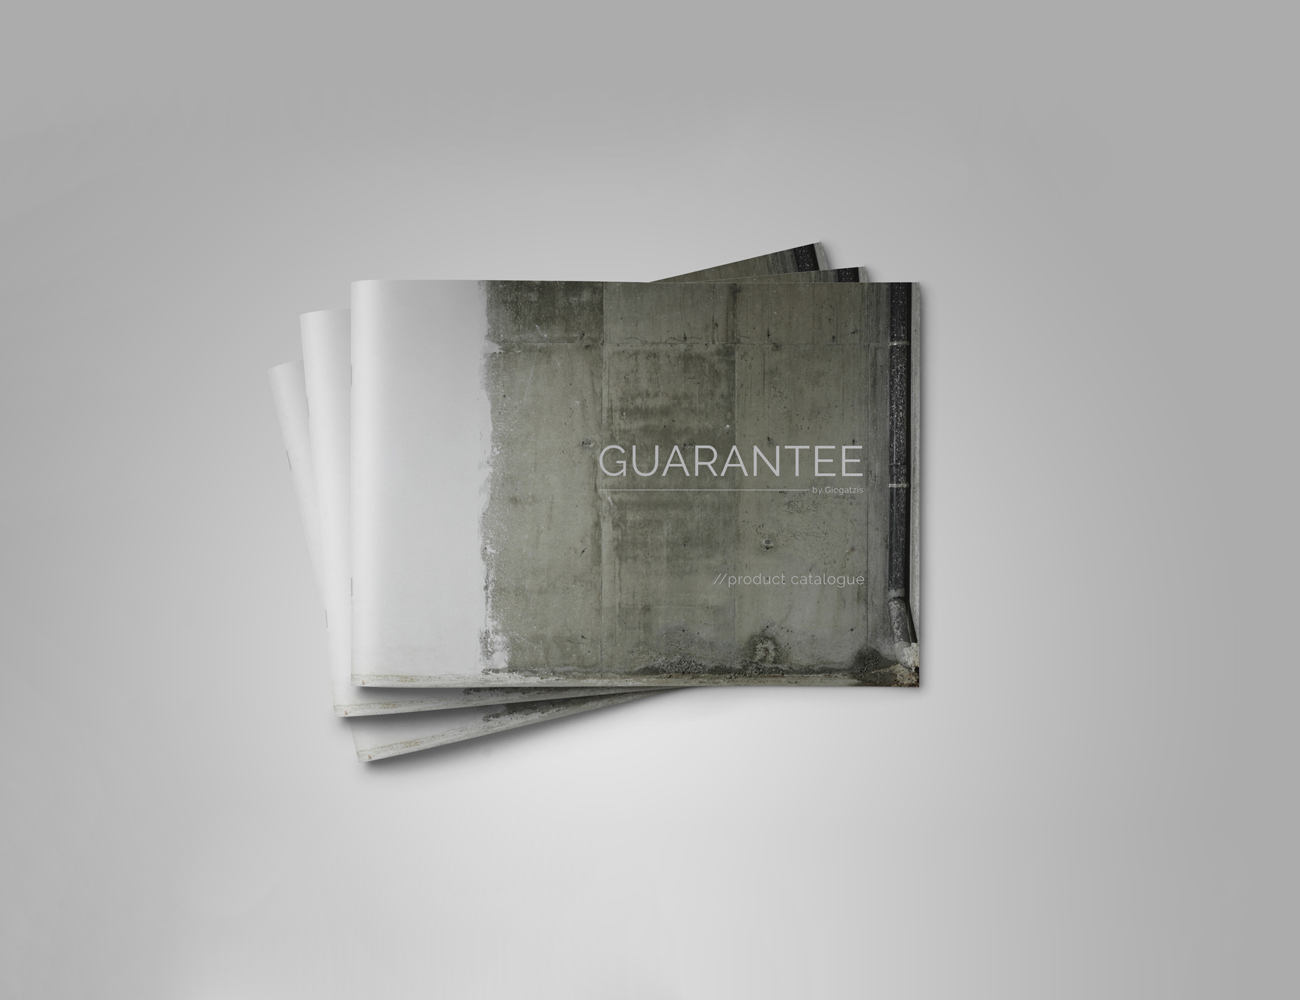 guarantee2015cataloguedesign1